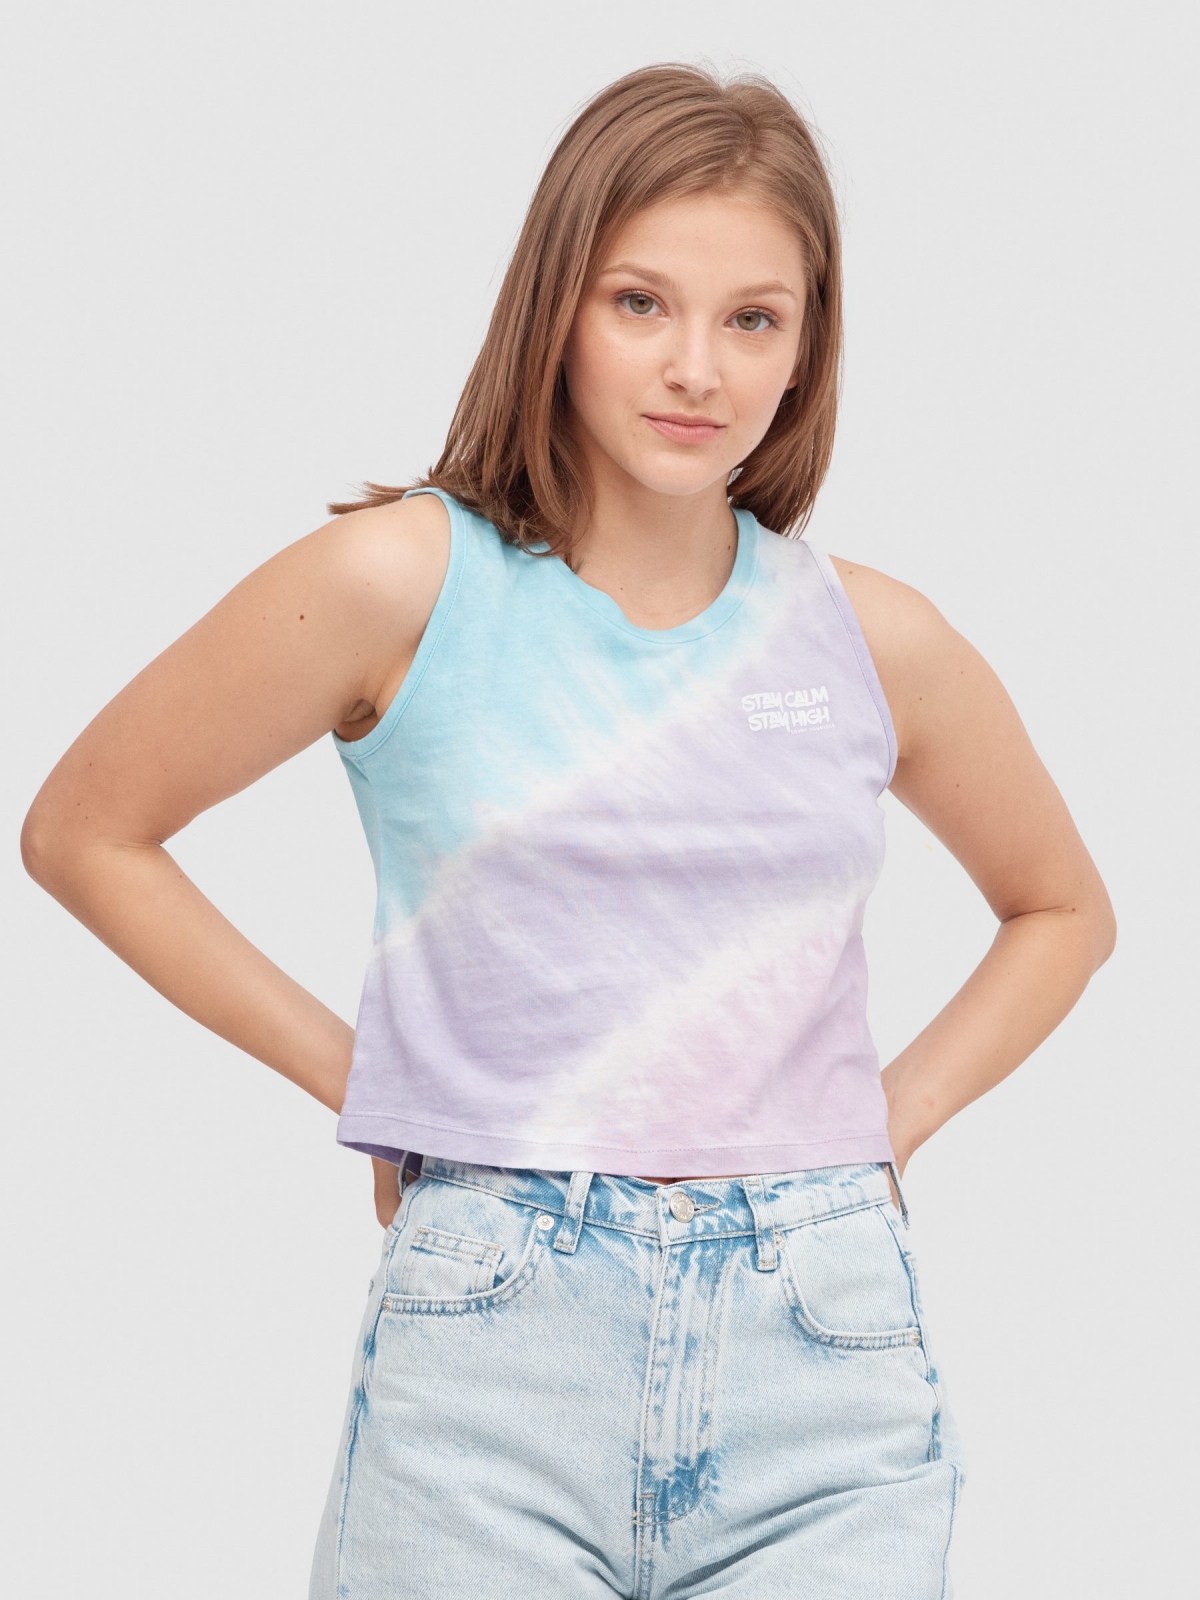 Camiseta tie dye sin mangas multicolor vista media frontal